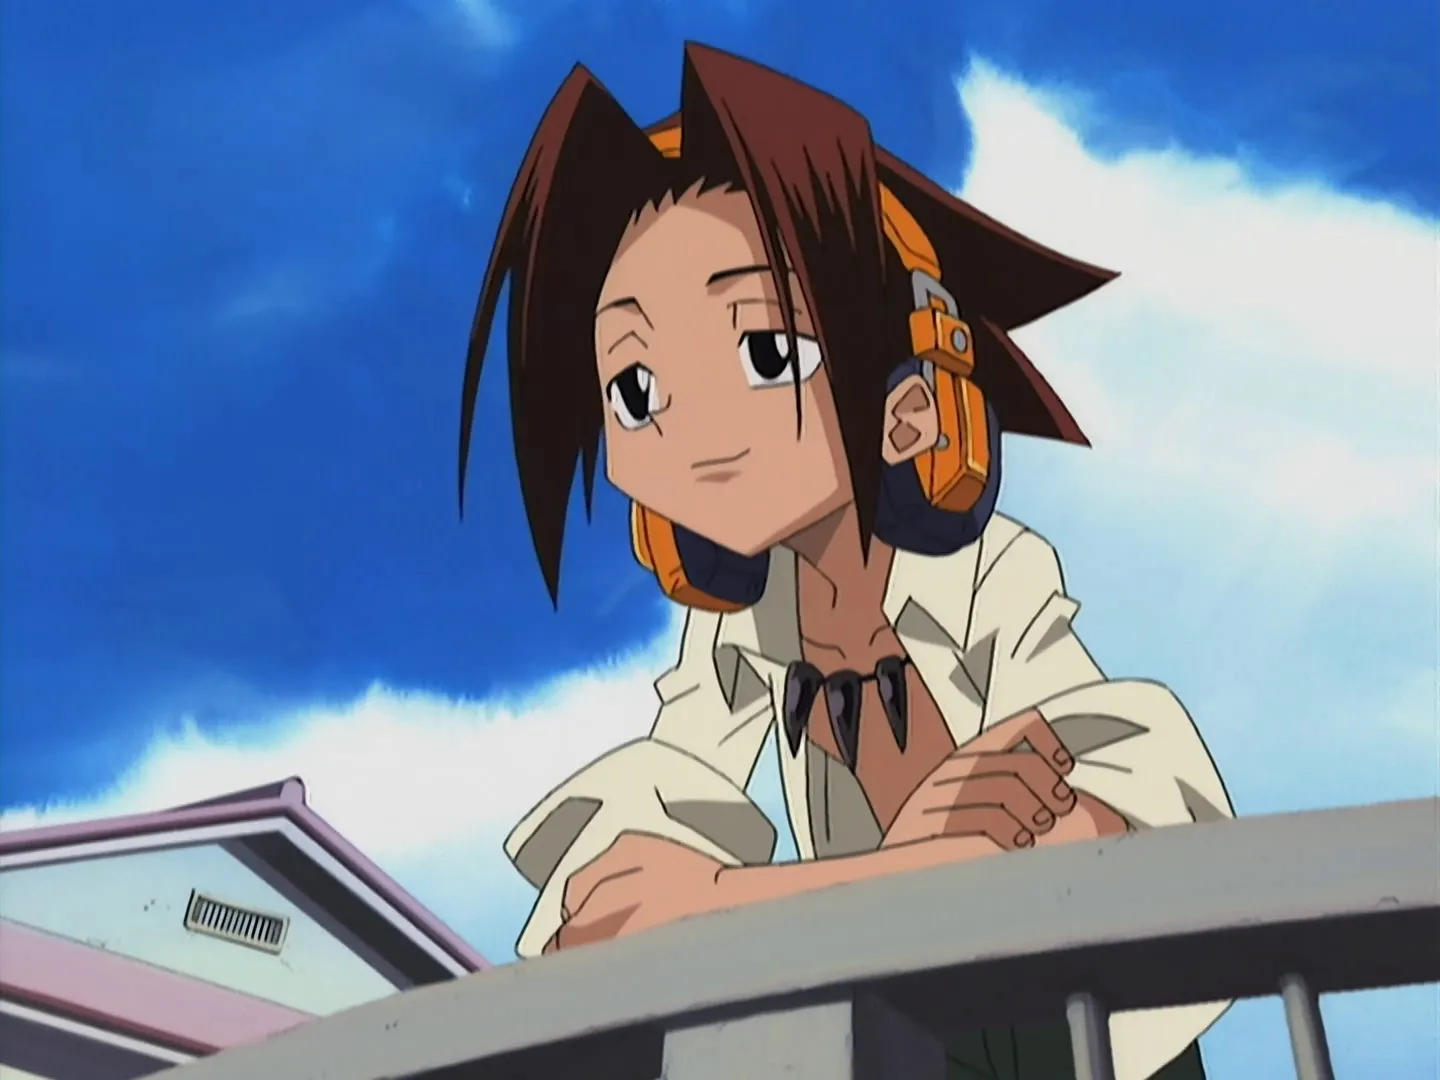 Asakura Yoh in the 2001 anime 'Shaman King'